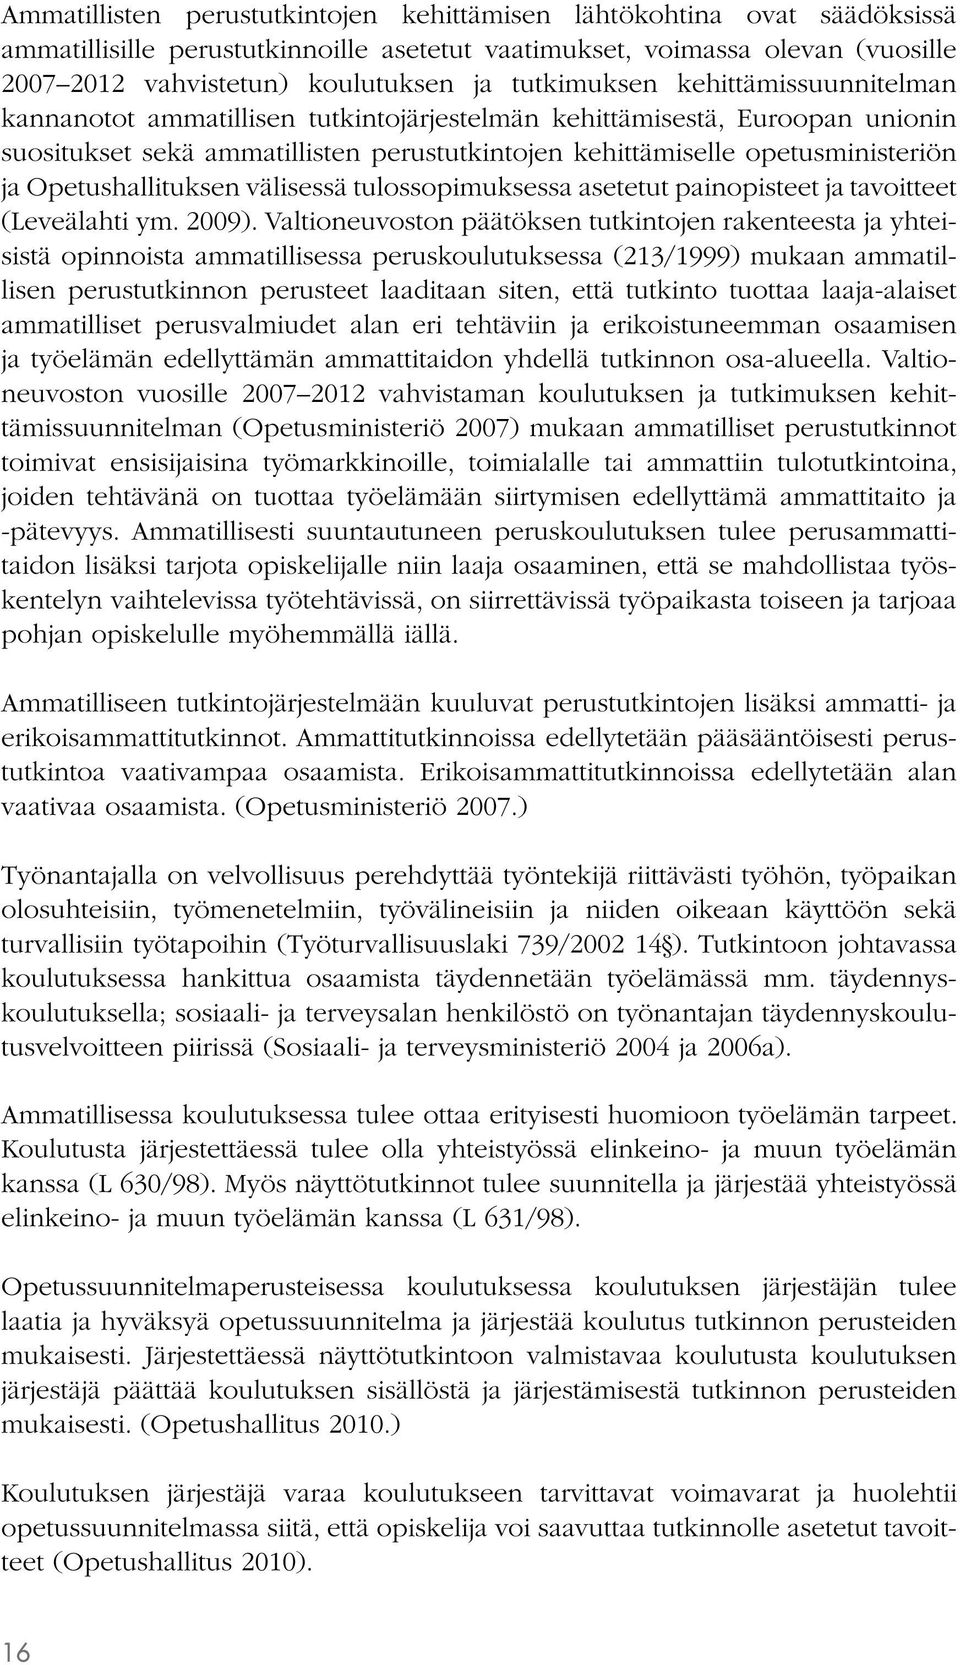 Opetushallituksen välisessä tulossopimuksessa asetetut painopisteet ja tavoitteet (Leveälahti ym. 2009).